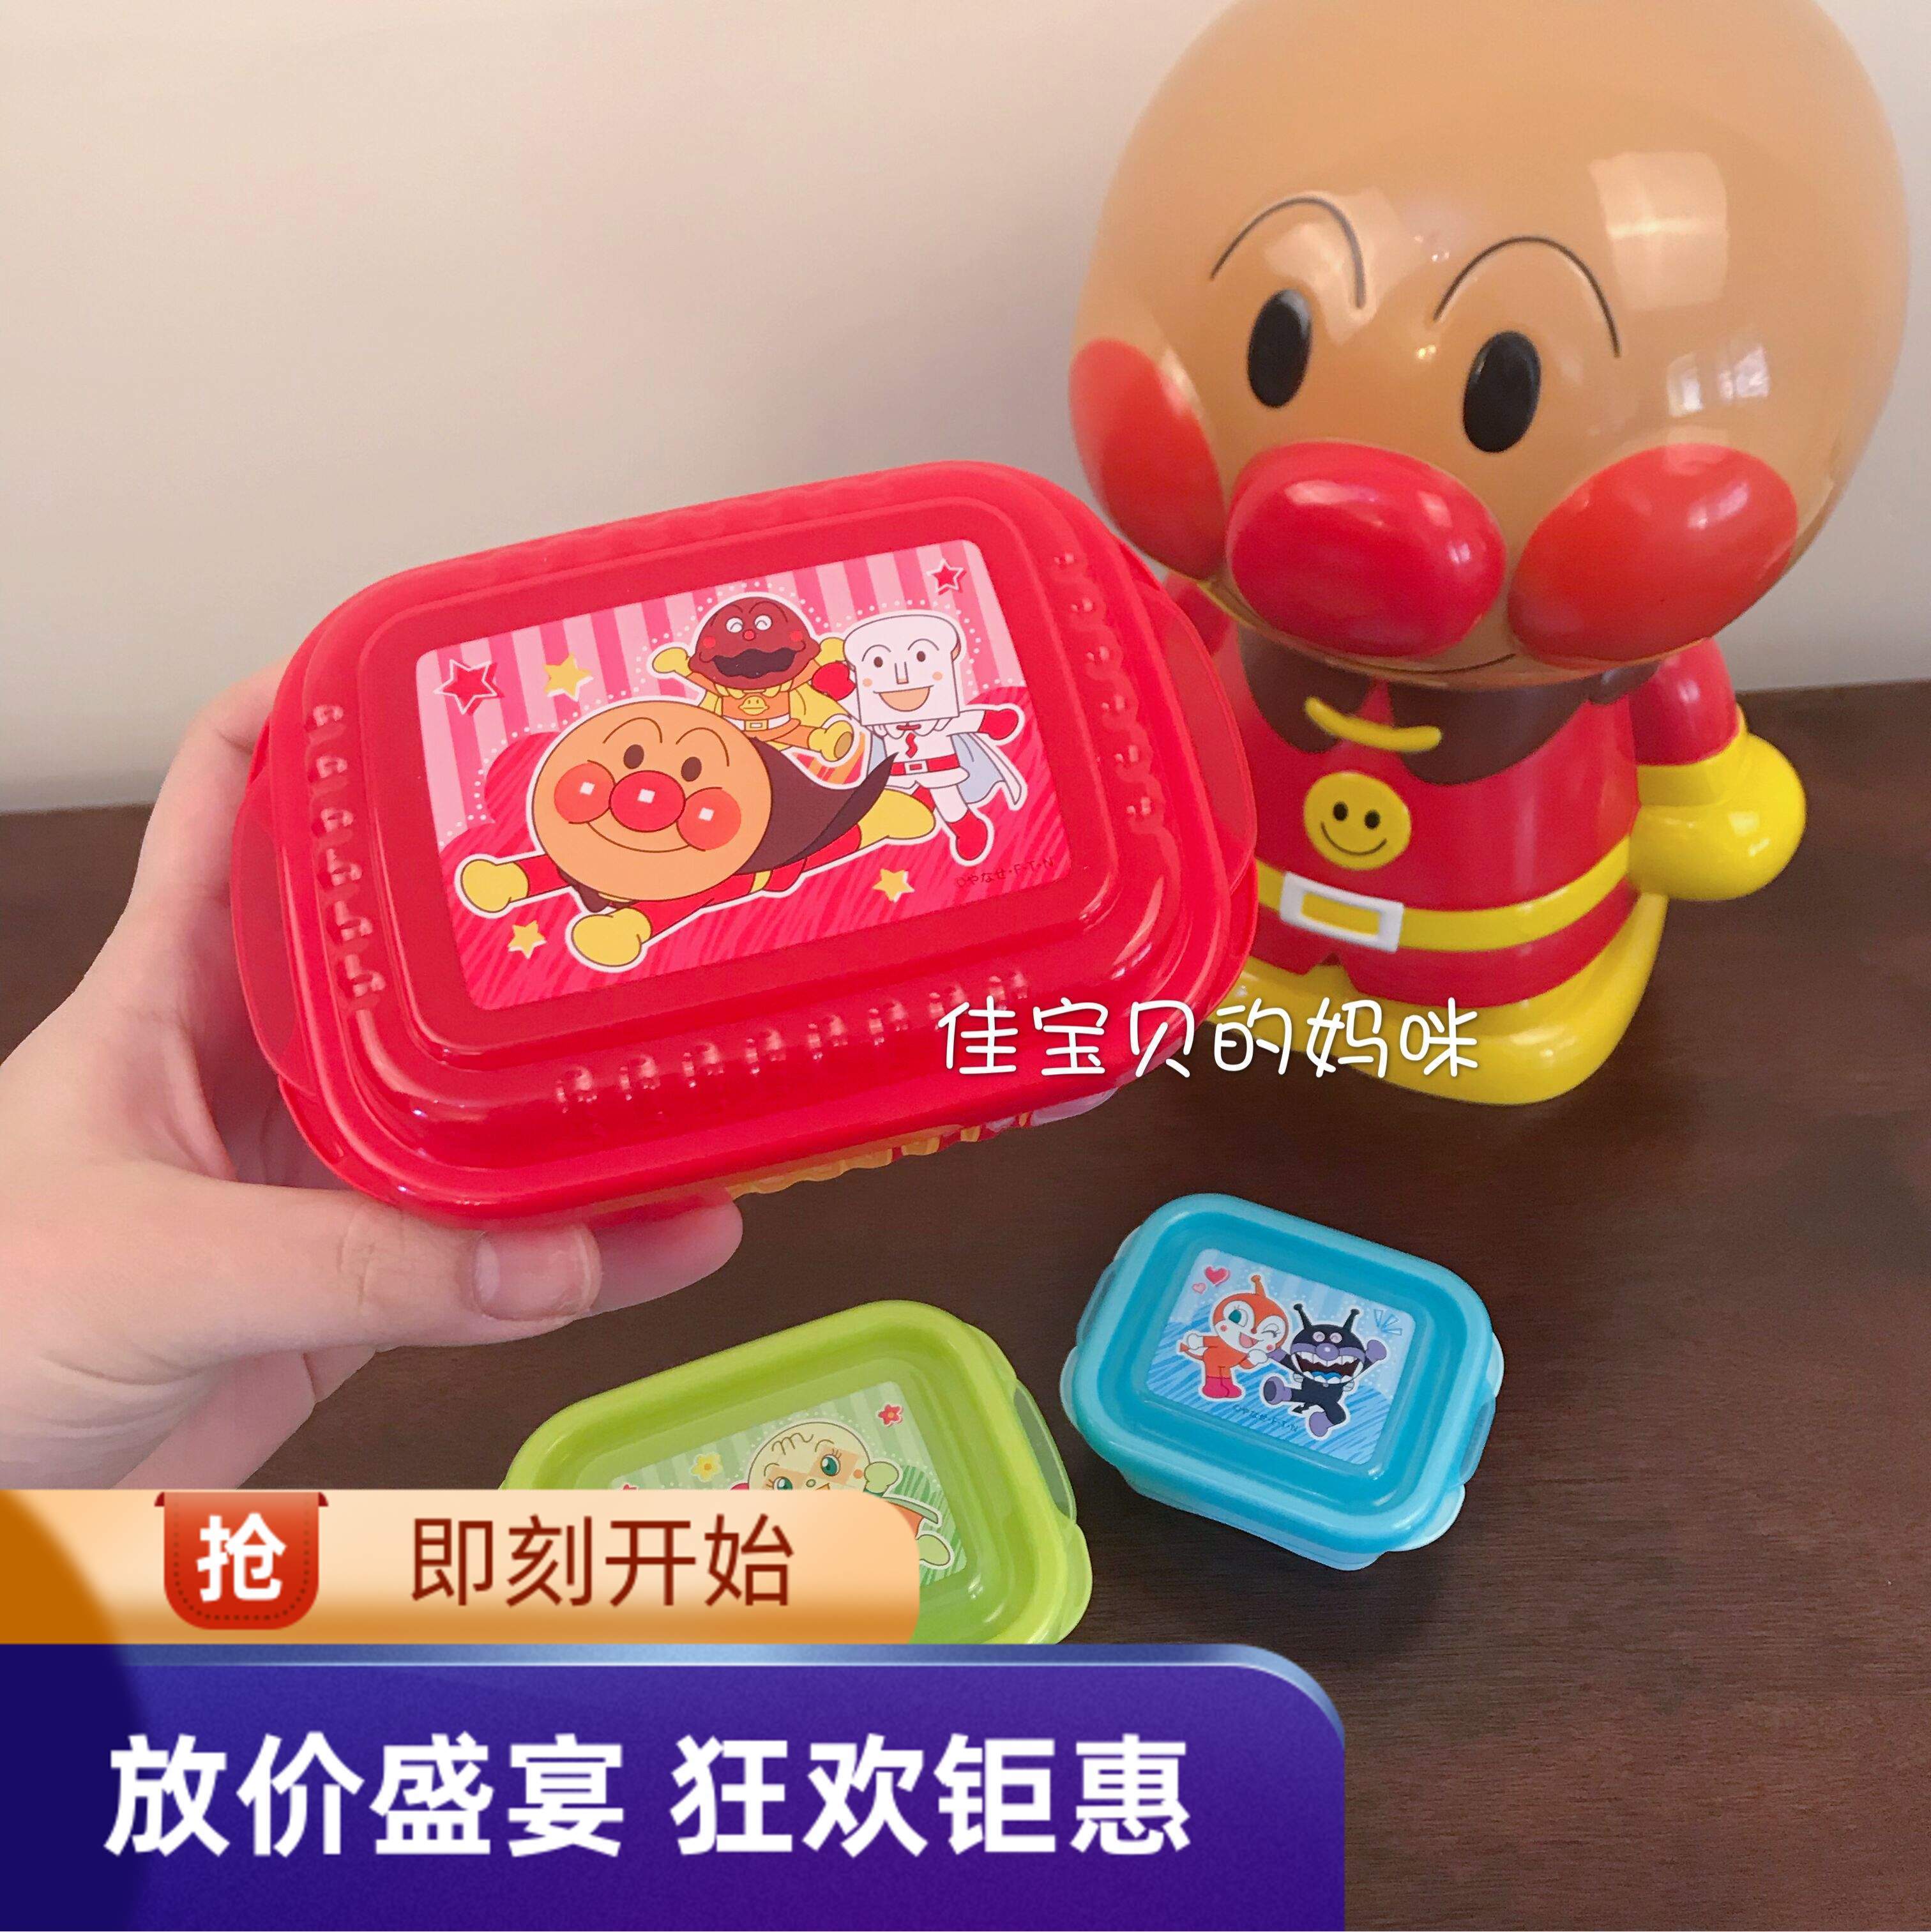 现货日本面包超人儿童进口宝宝可爱外出便携保鲜盒水果零食盒餐具